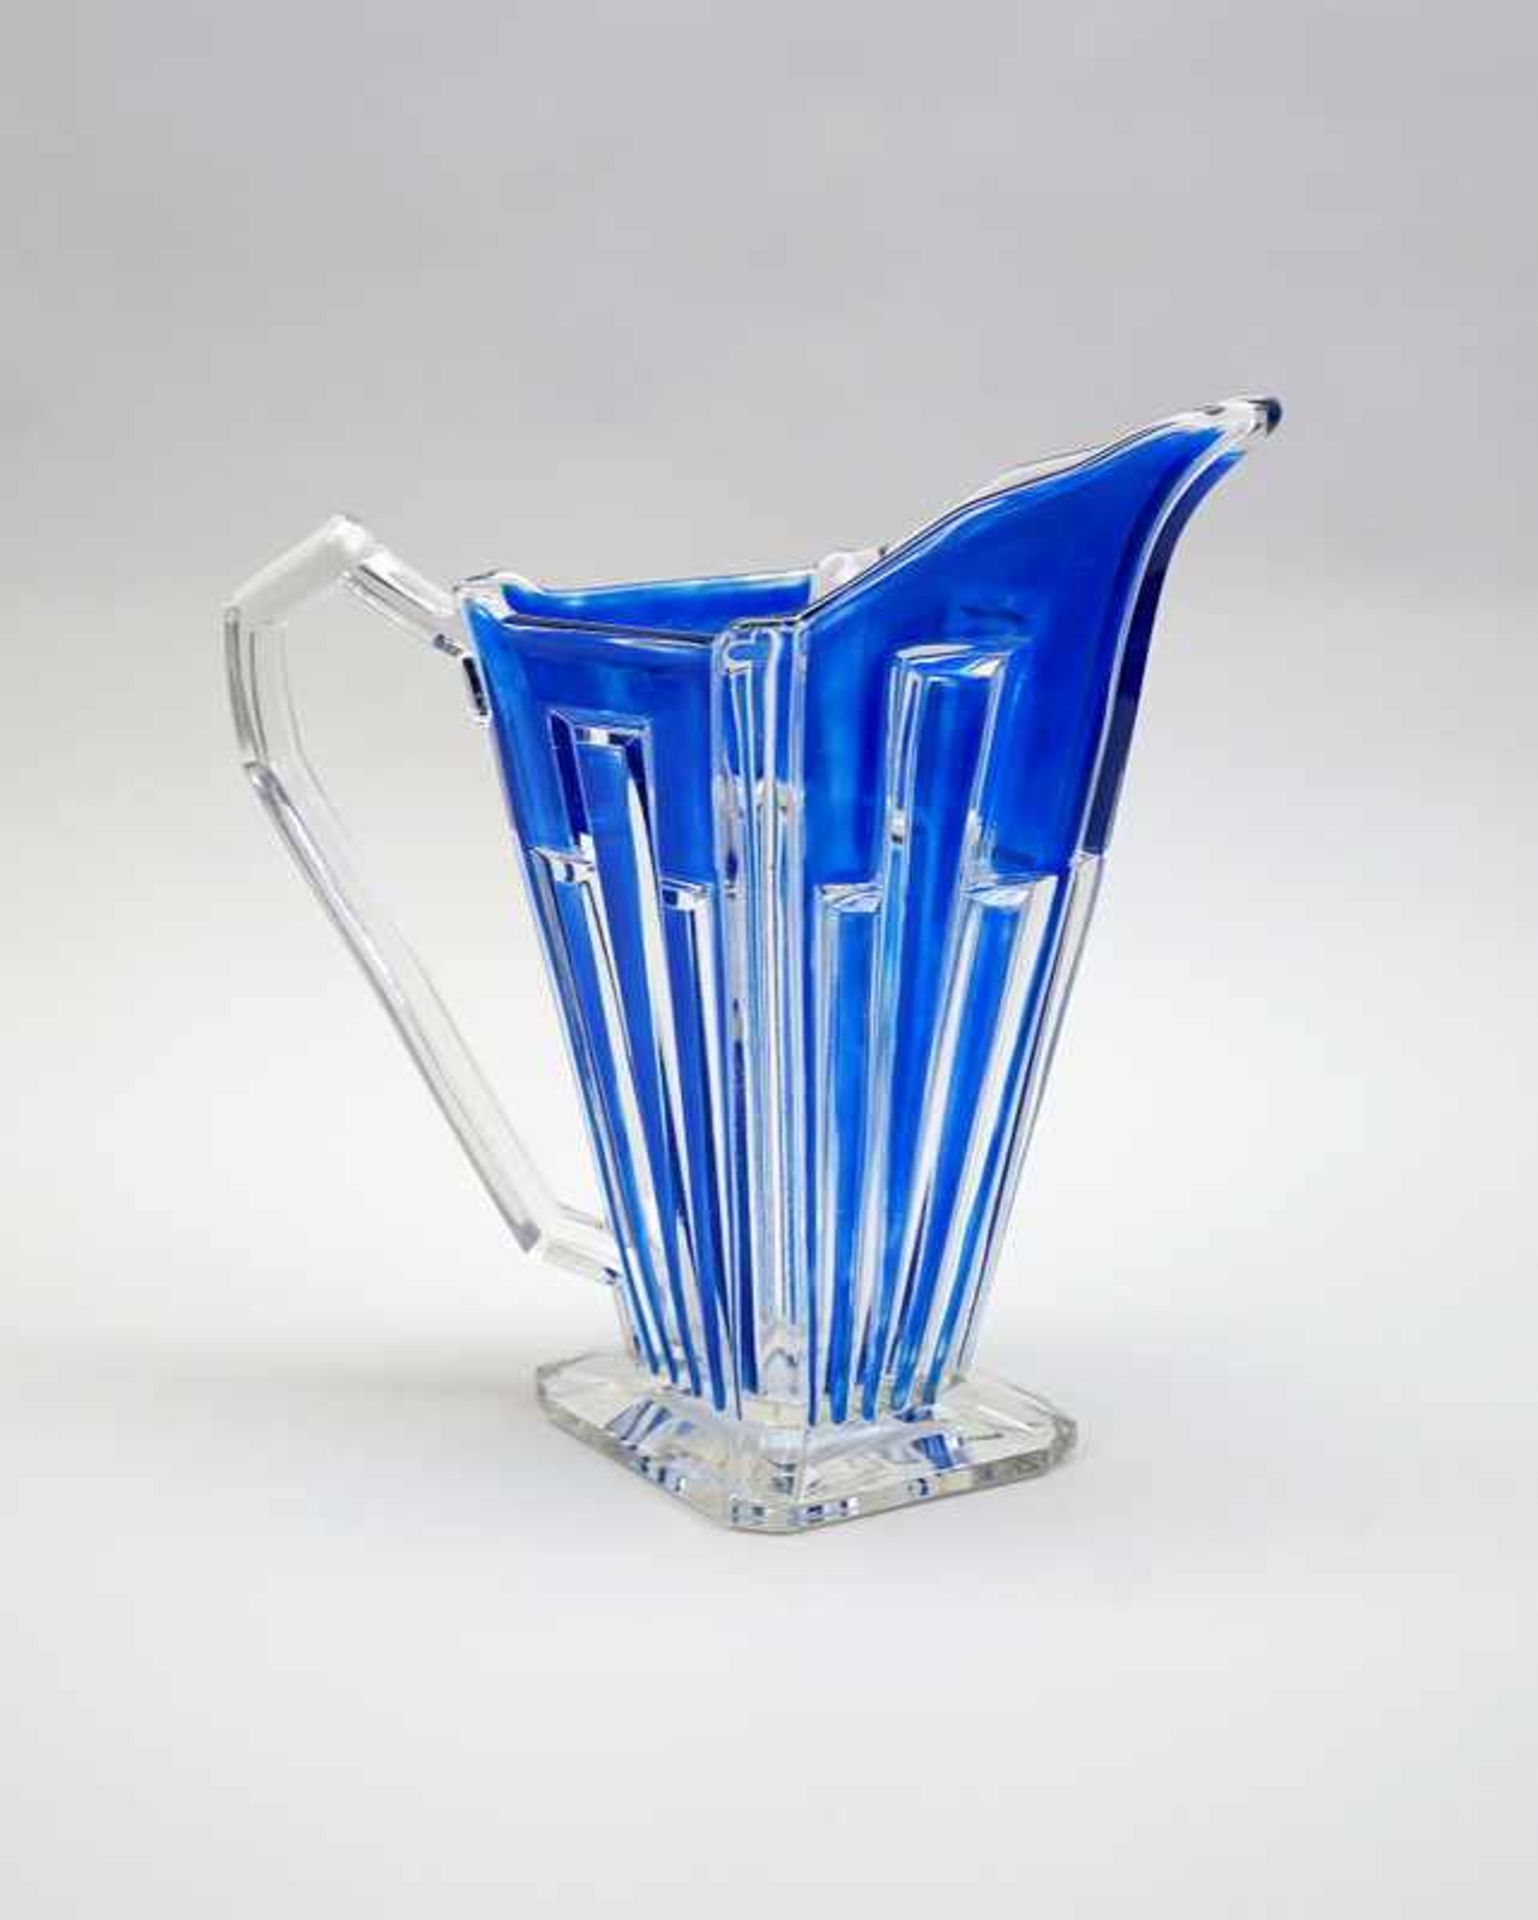 Art déco GlaskrugDurchsichtiges Glas blau emailliert mit geschliffener Oberfläche und - Bild 2 aus 2